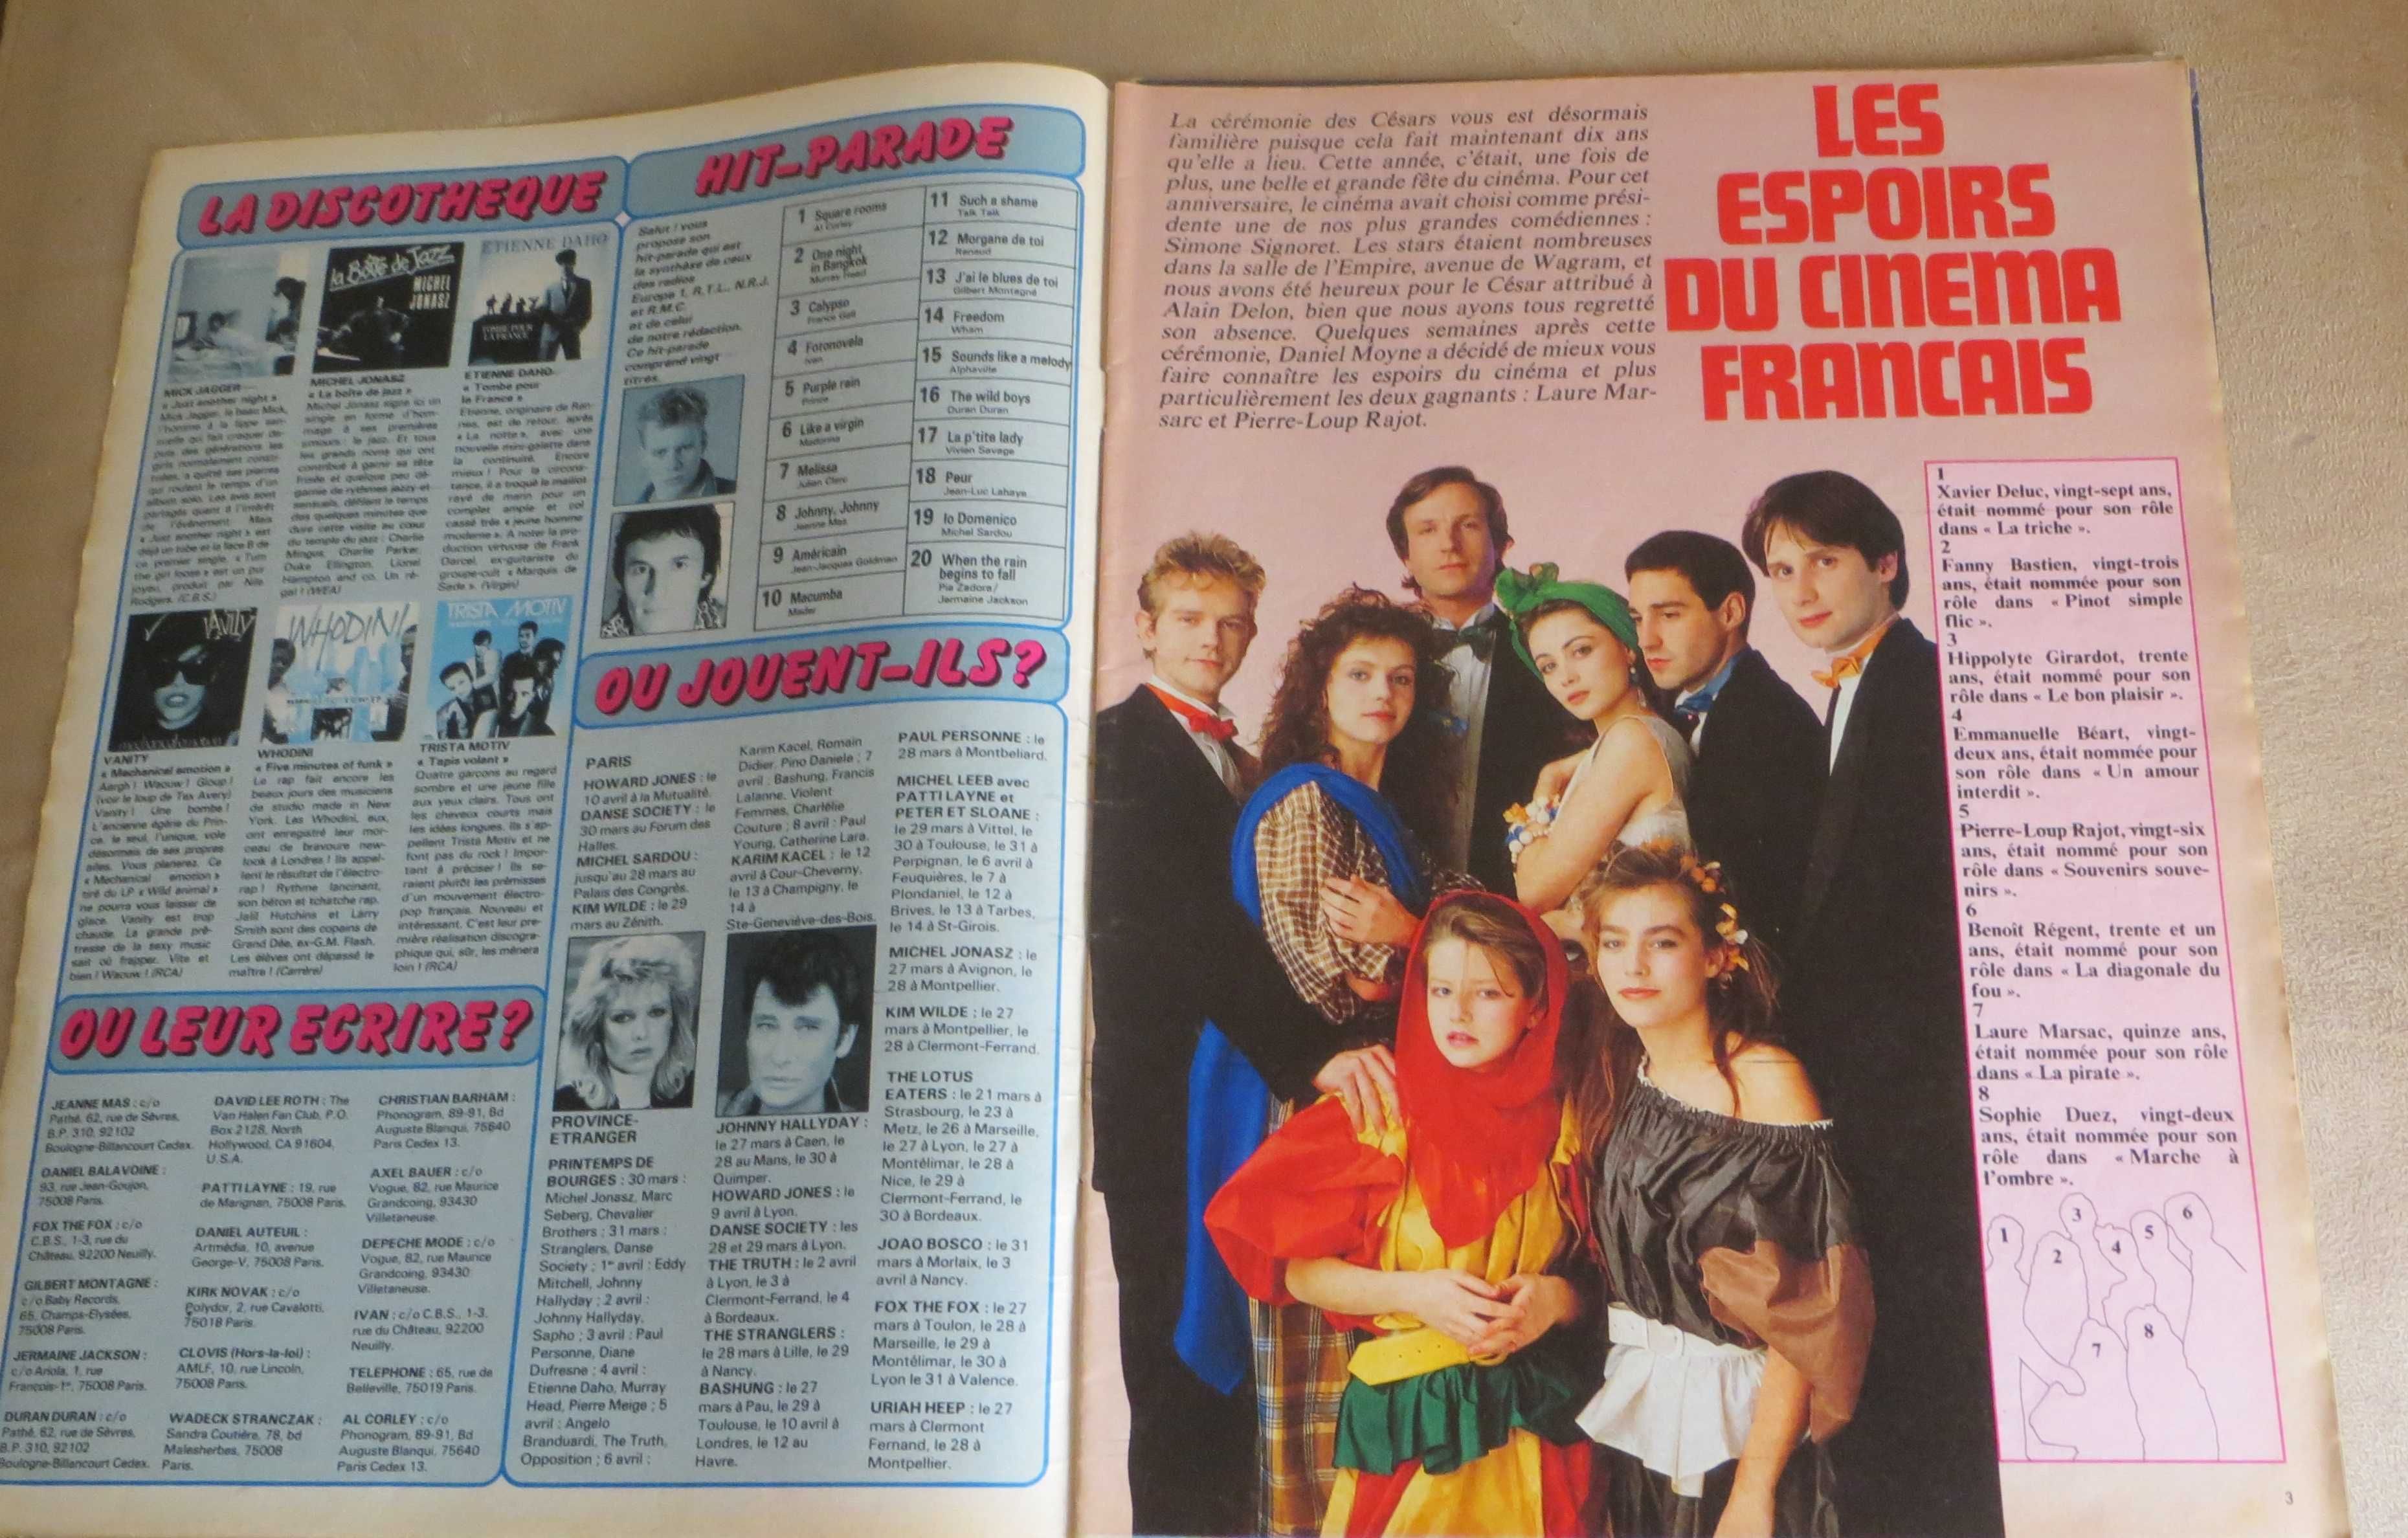 Revista Salut Música anos 80 Dueto Daniel Balavoine e Mas